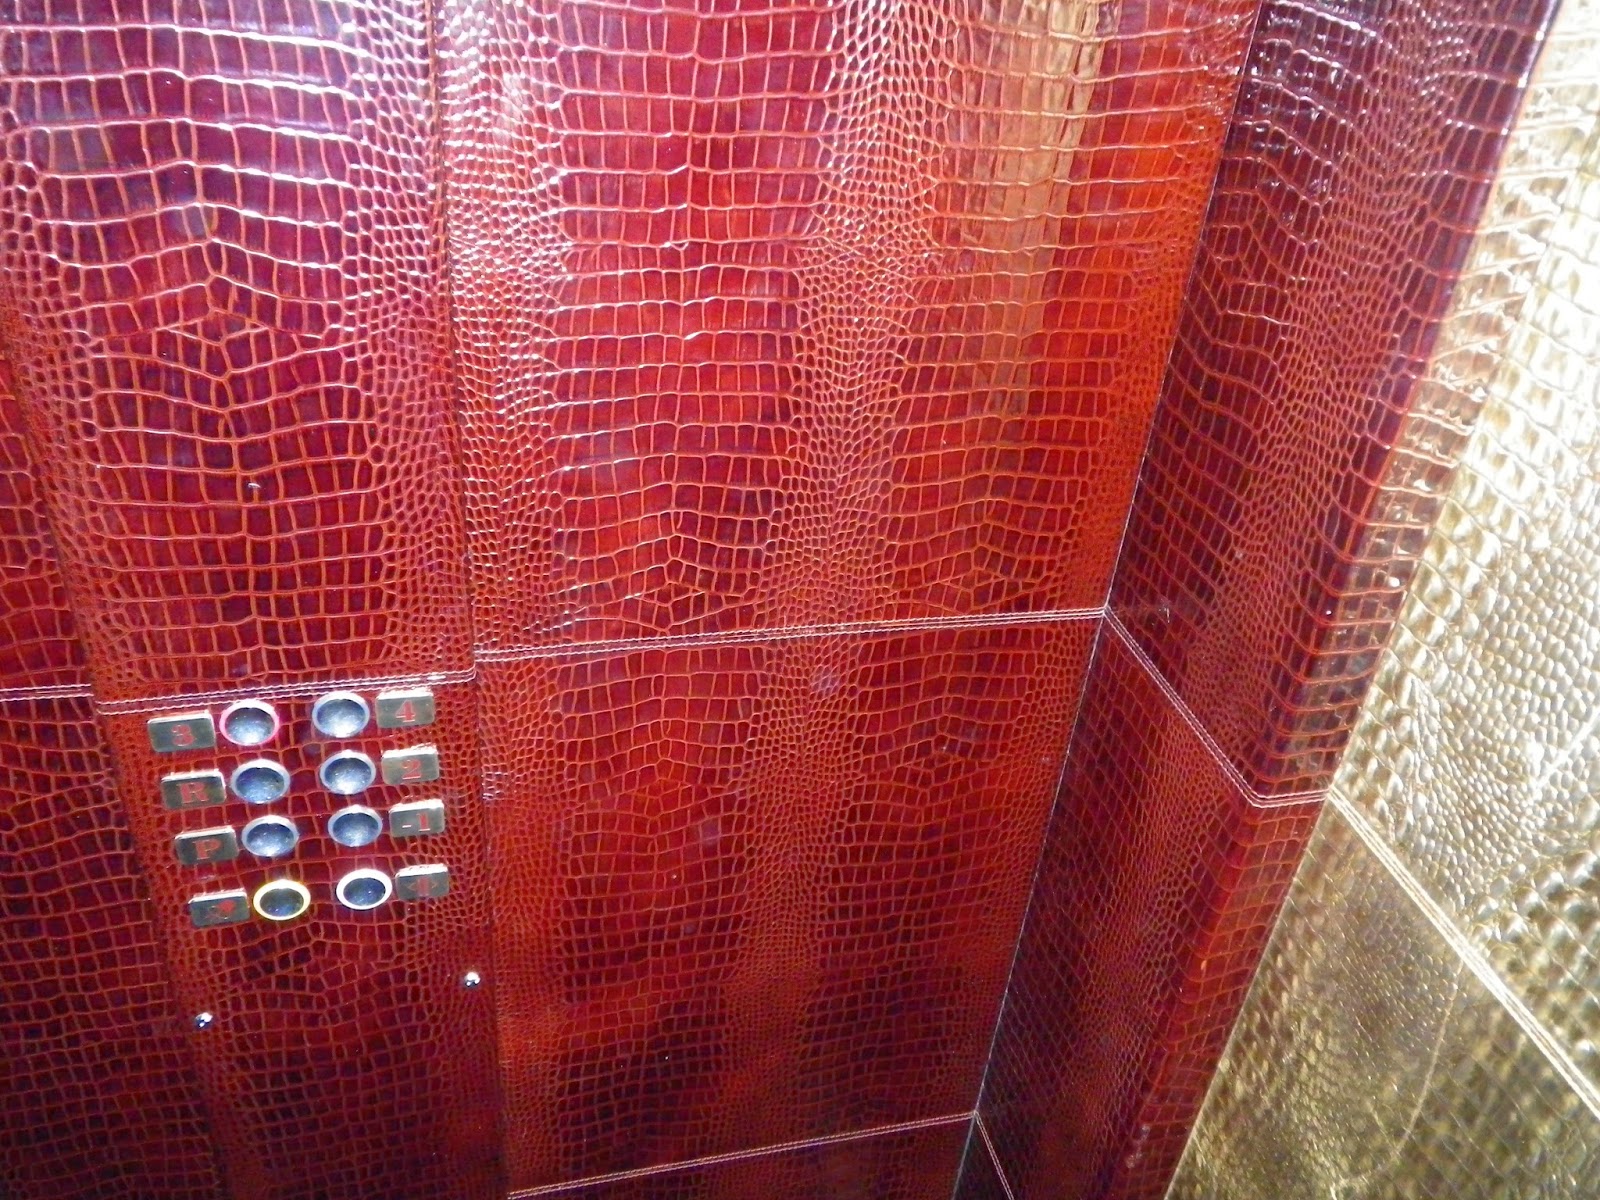 asansor kaplama fiyatlariASANSÖR KAPLAMA FİYATLARI 0535 DERİ KAPI